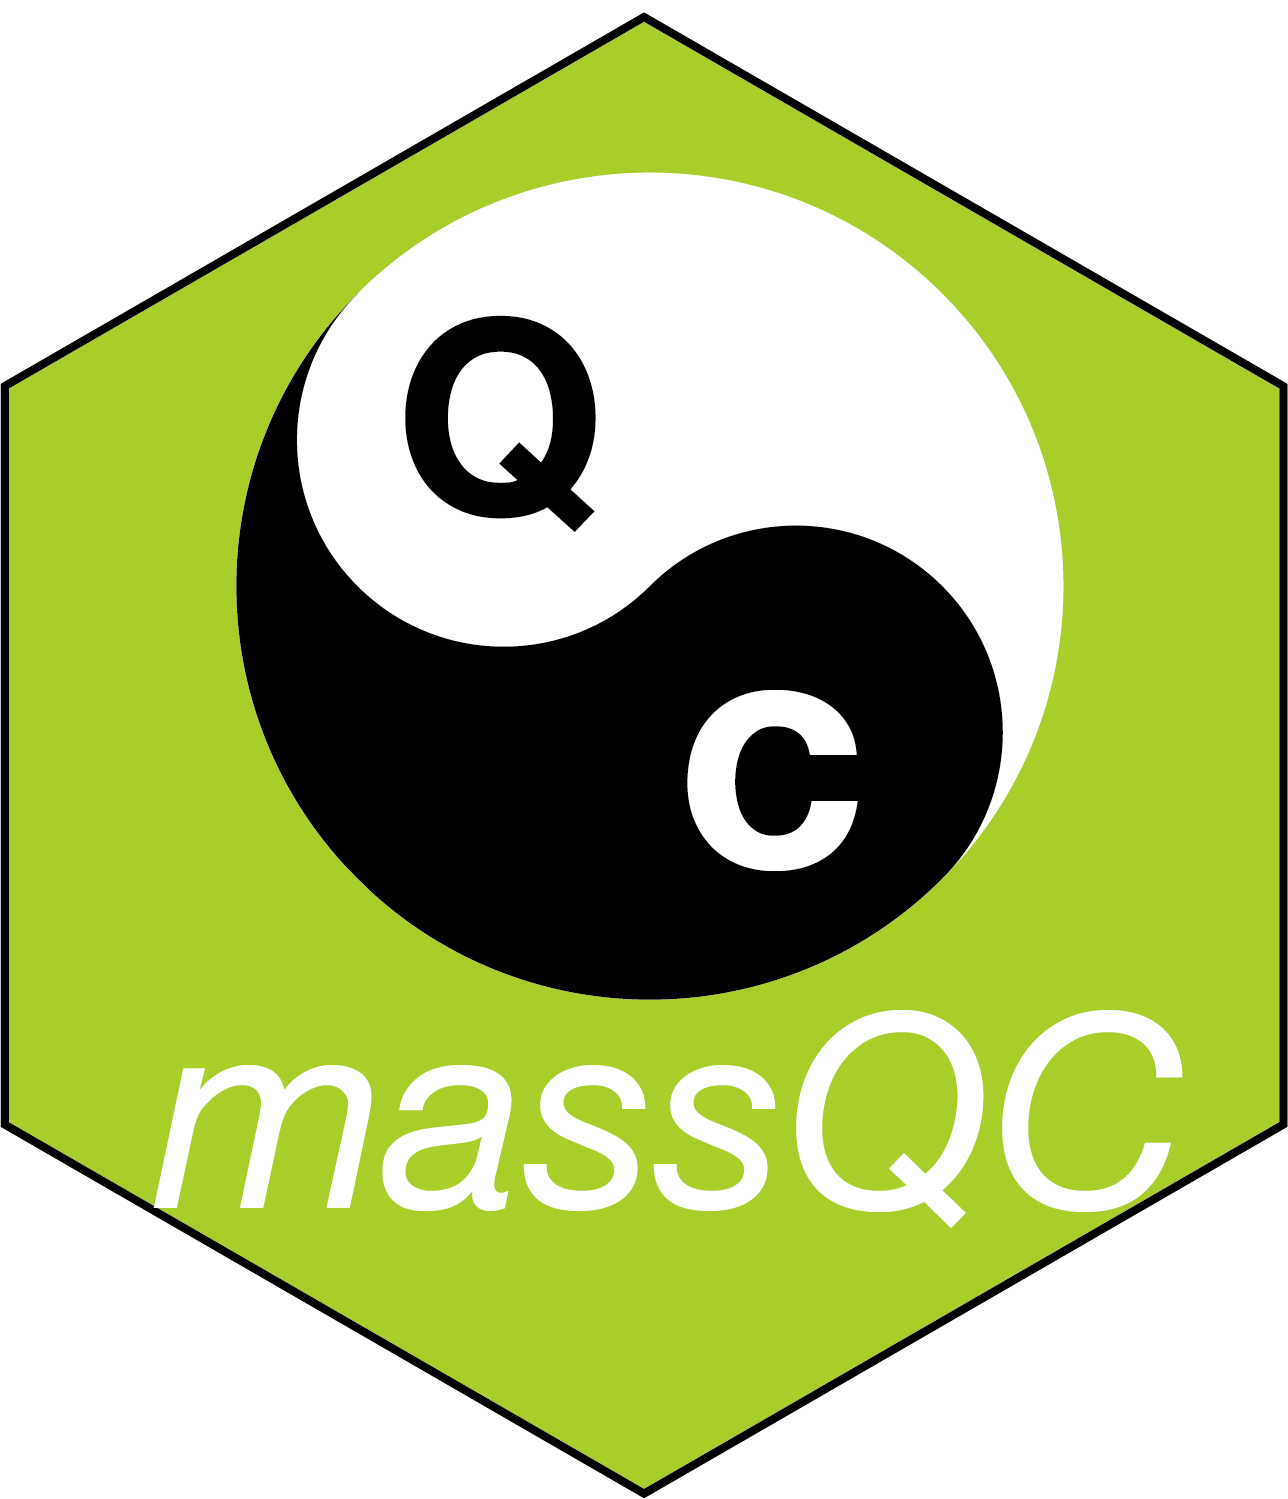 massQC hex sticker